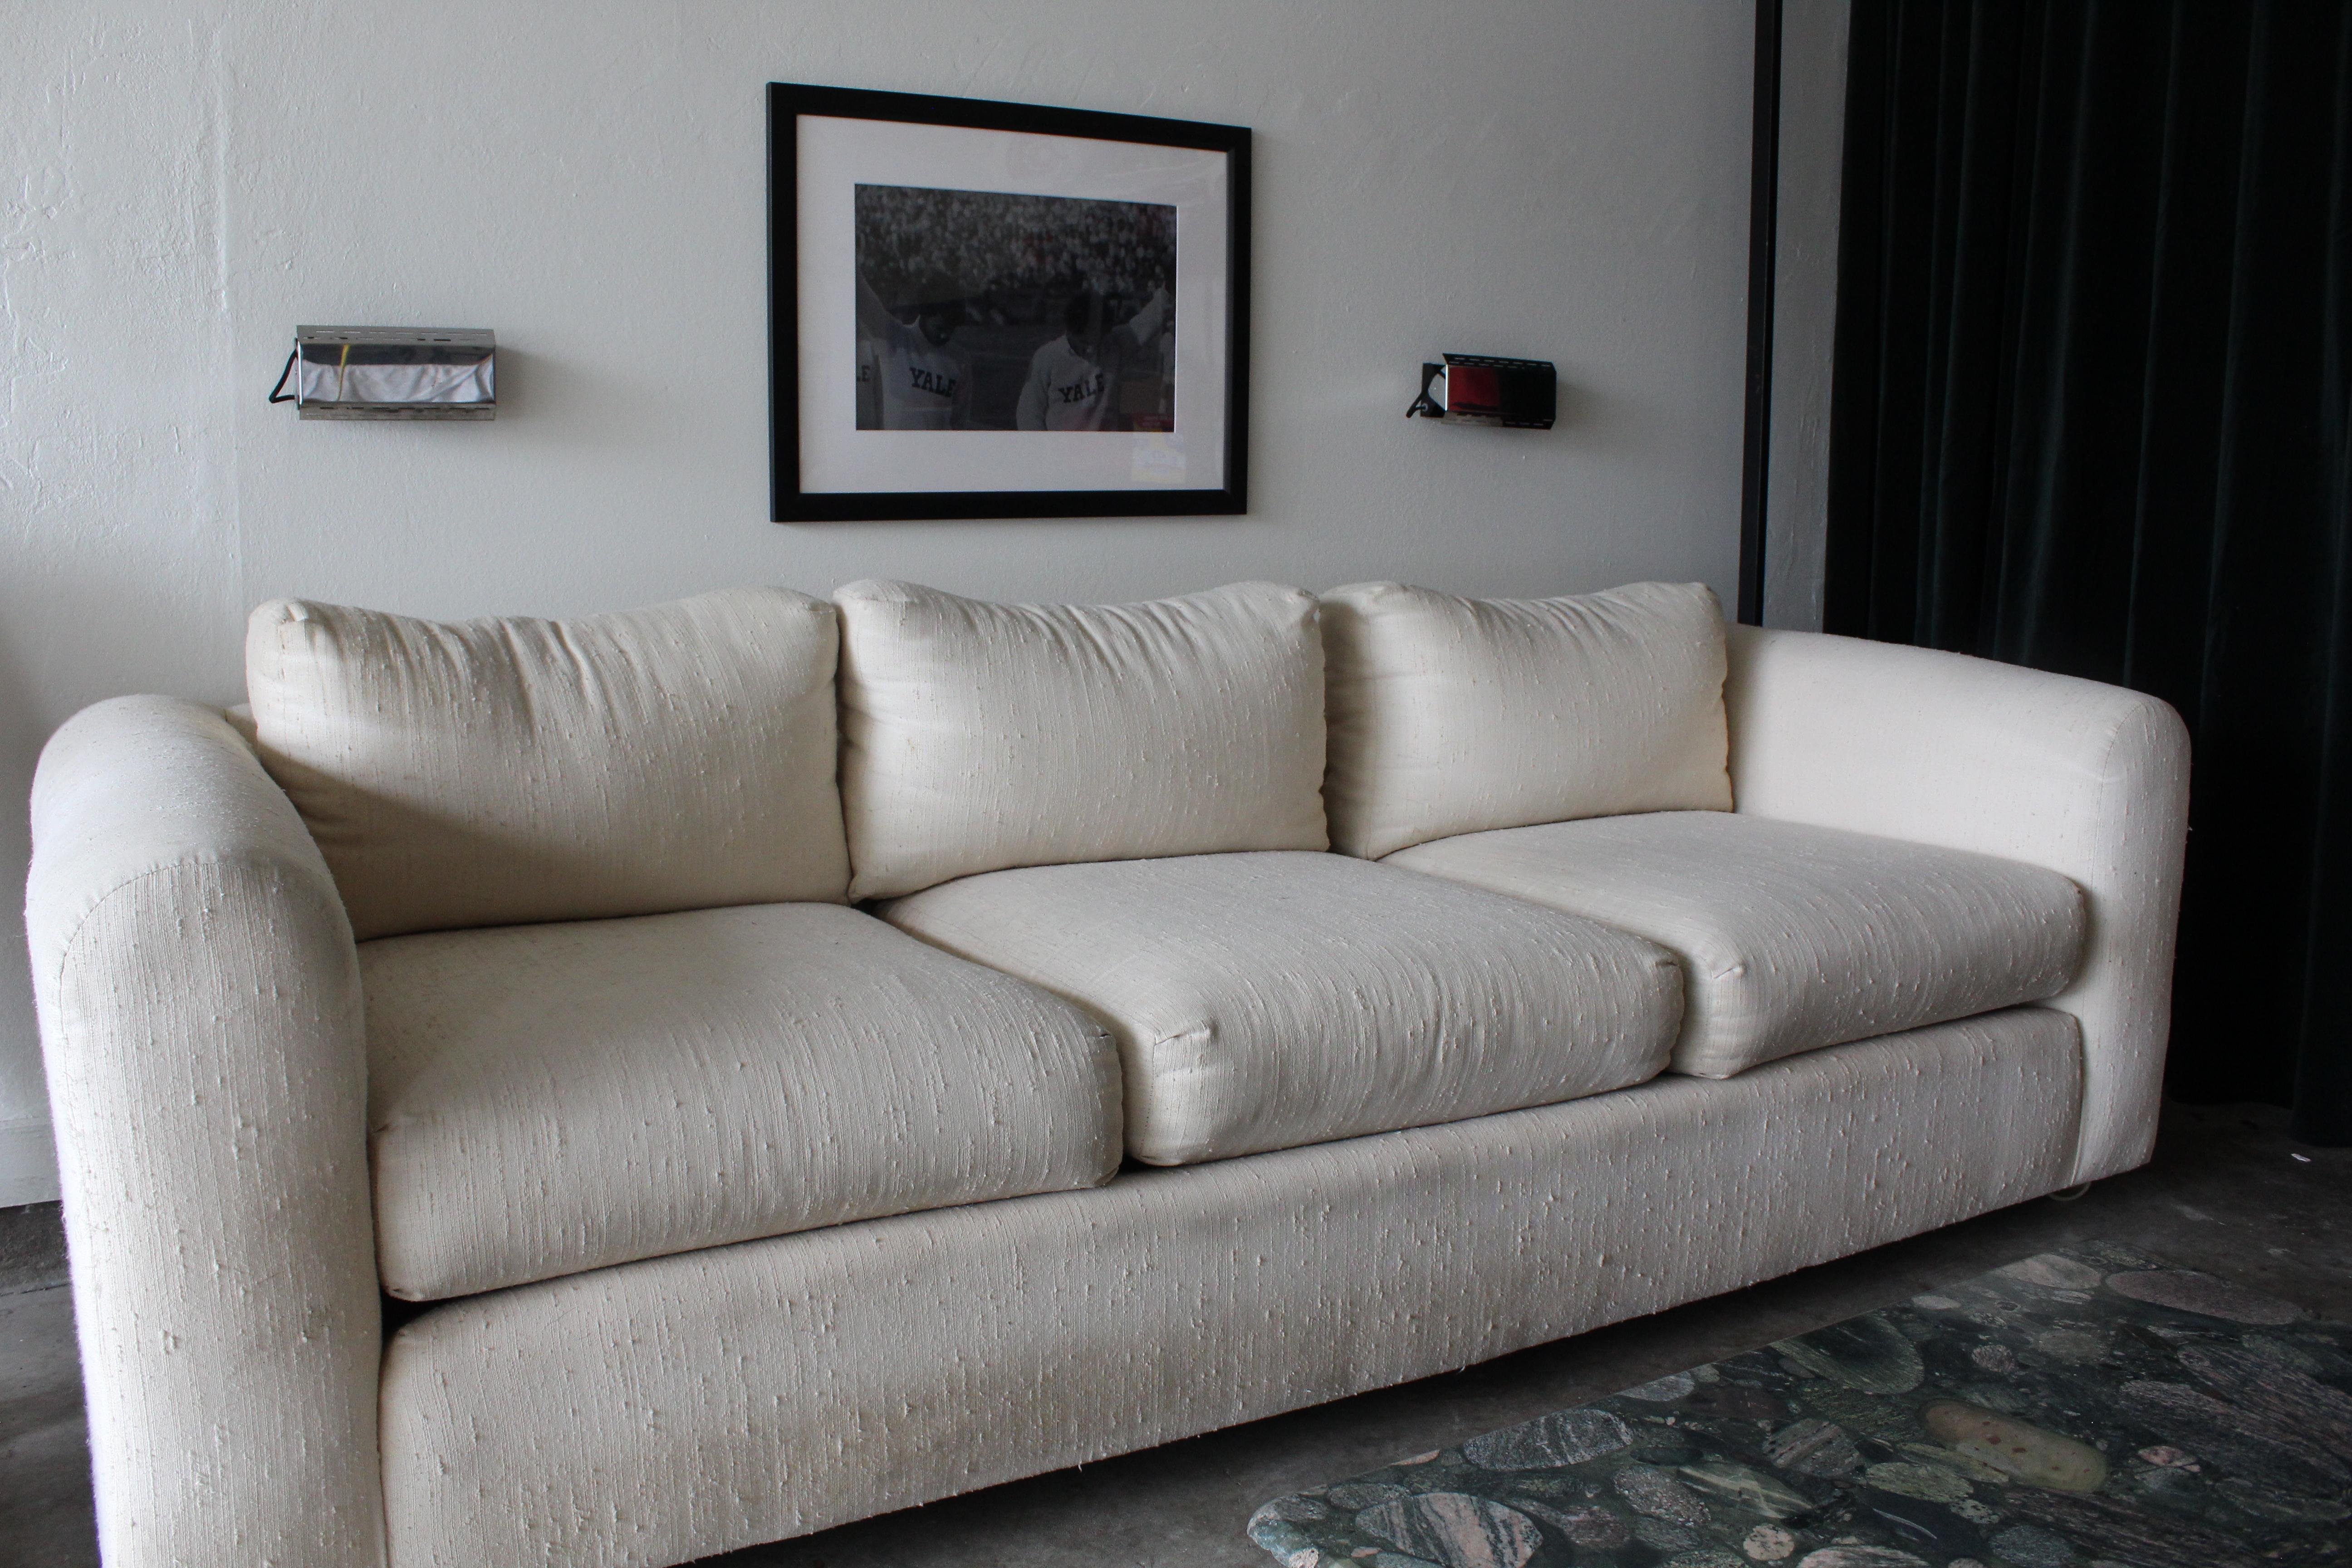 Ce superbe canapé Selig Monroe des années 1970. Cette belle pièce danoise comporte trois coussins de dossier et trois coussins d'assise sur un cadre rectangulaire avec des accoudoirs arrondis. L'ensemble de la pièce est tapissé d'un tissu blanc qui